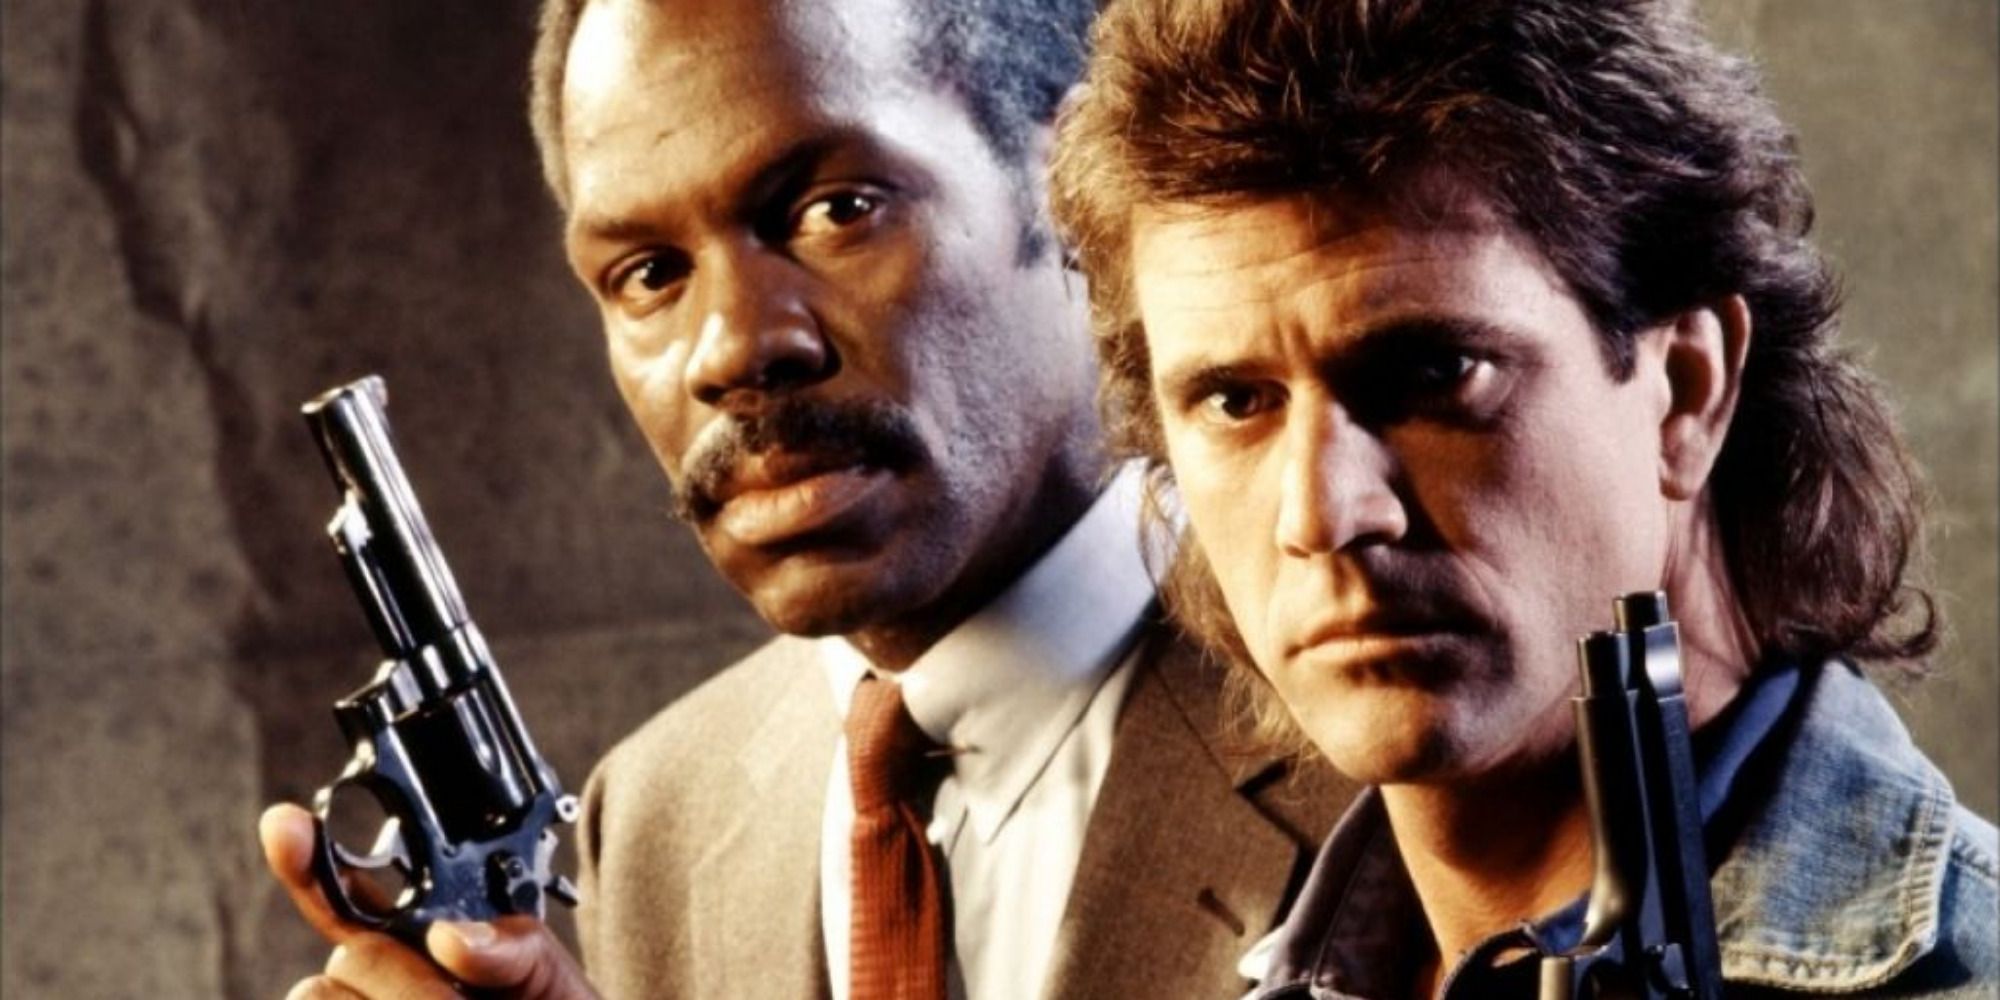 Mel Gibson sebagai Riggs dan Danny Glover sebagai Murtaugh dari Lethal Weapon, memegang senjata